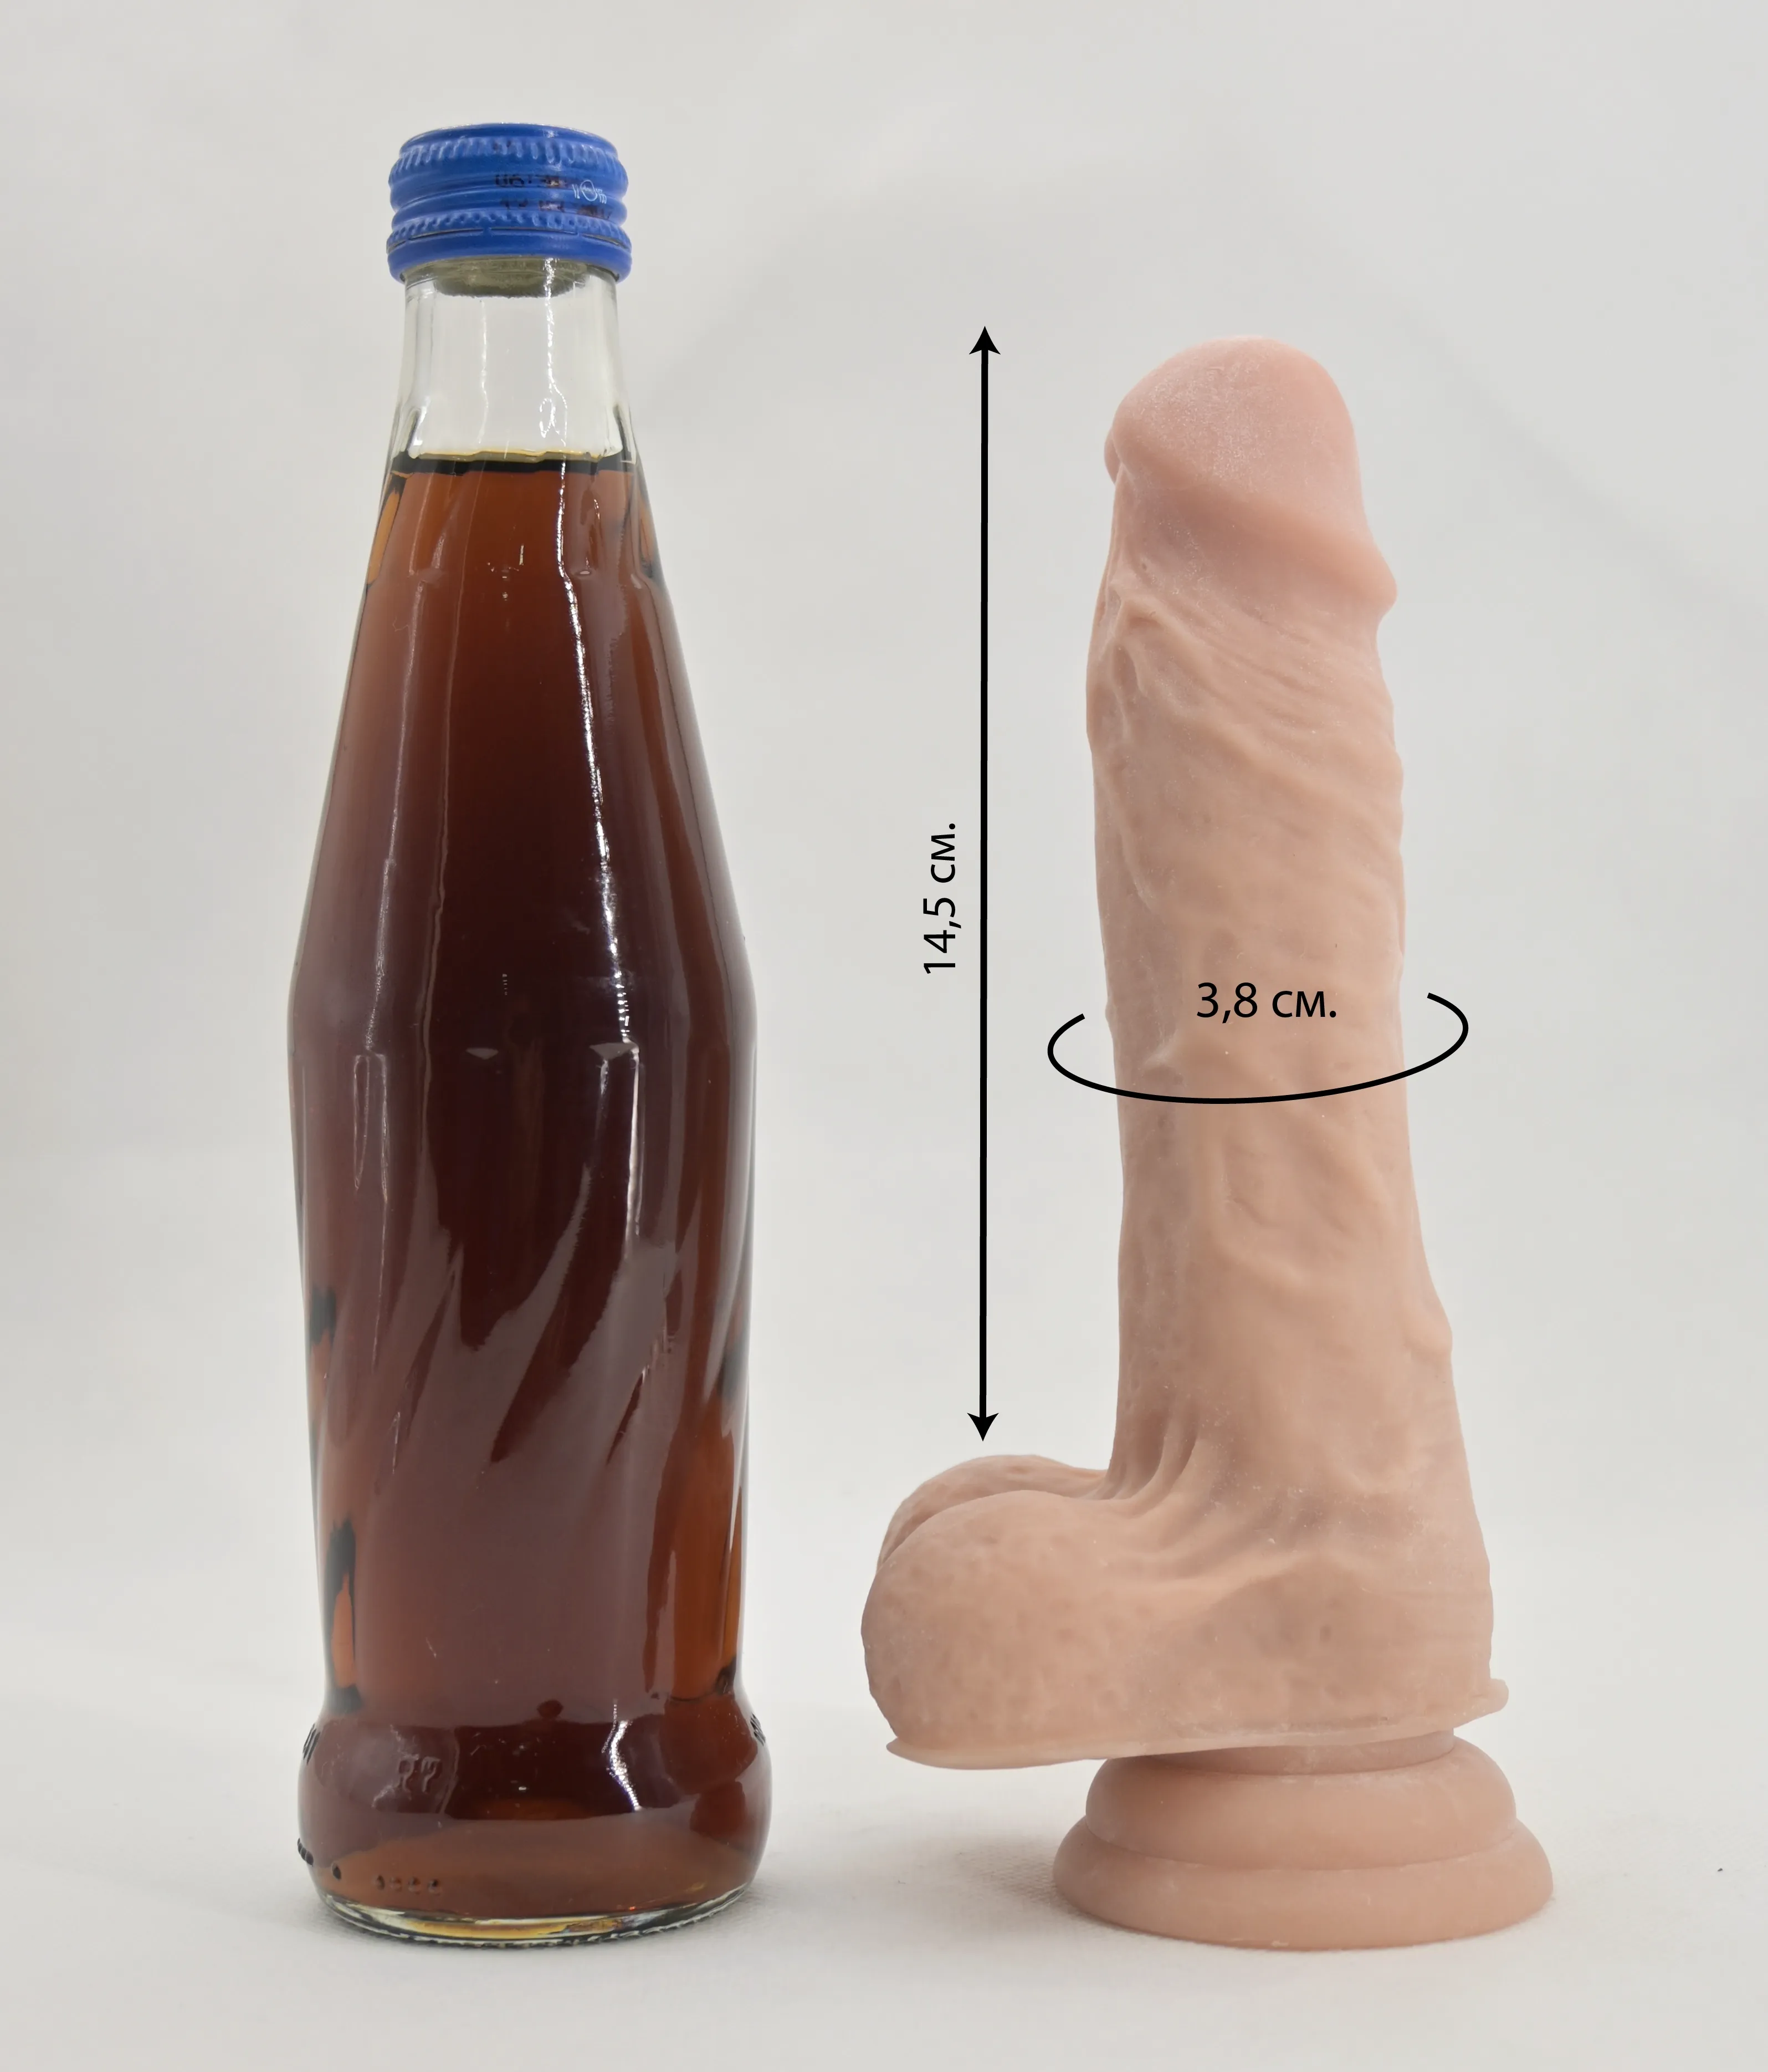 Размеры и сравнение фаллоимитатора Flatterer со стеклянной бутылкой 0,33 л.